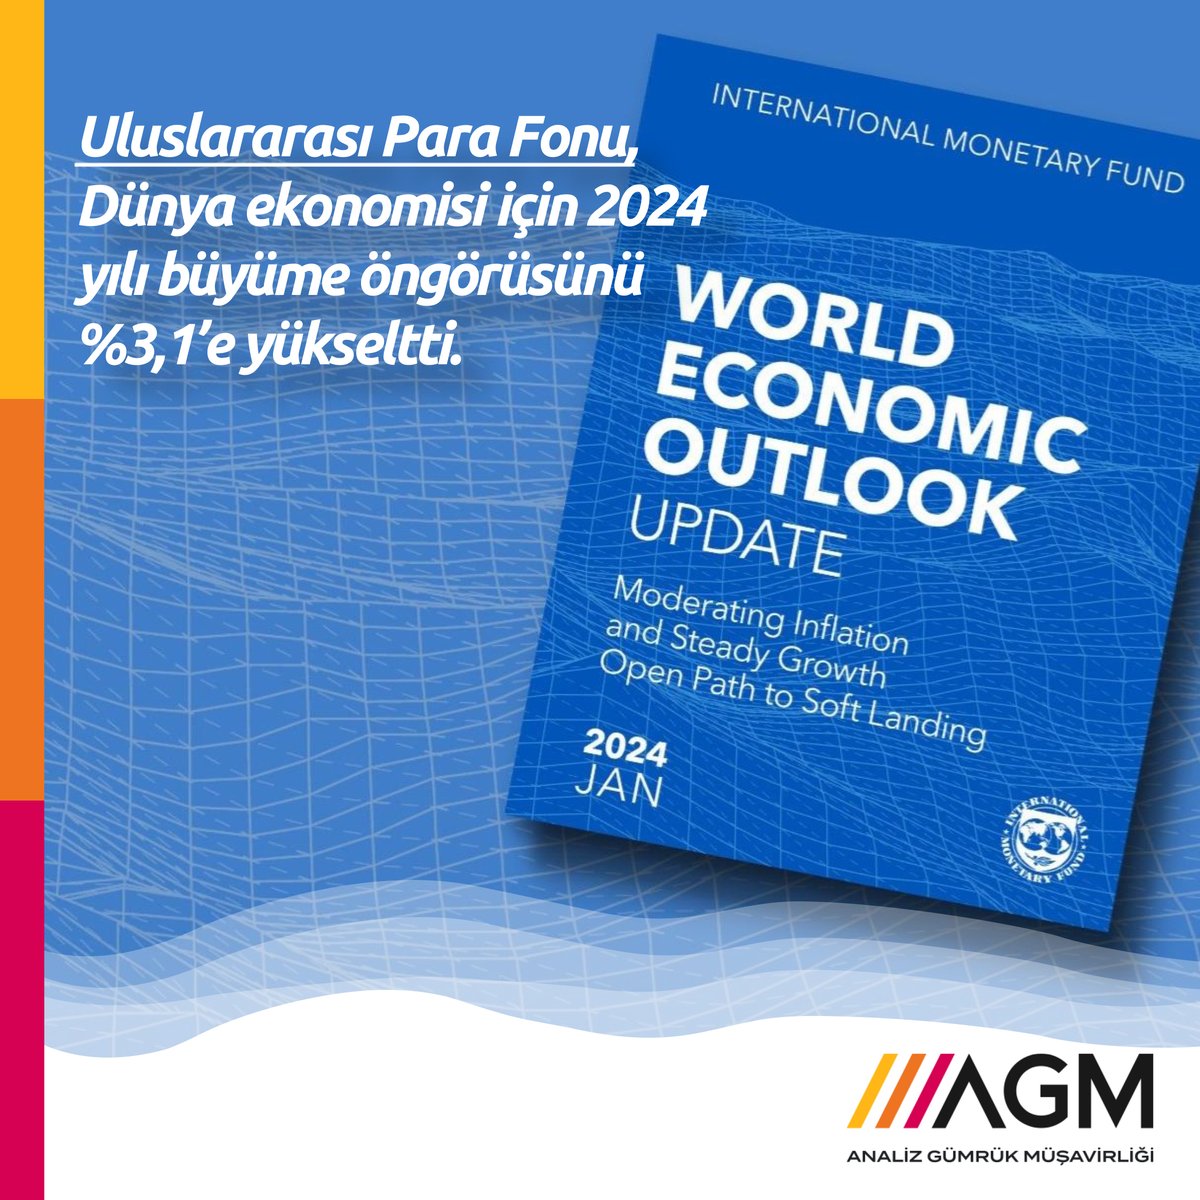 Uluslararası Para Fonu, Dünya ekonomisi için 2024 yılı büyüme öngörüsünü %3,1'e yükseltti.
.
imf.org/en/Publication…
.
#ekonomi #büyüme #dünyaekonomisi #uluslararasıparafonu #economicoutlook